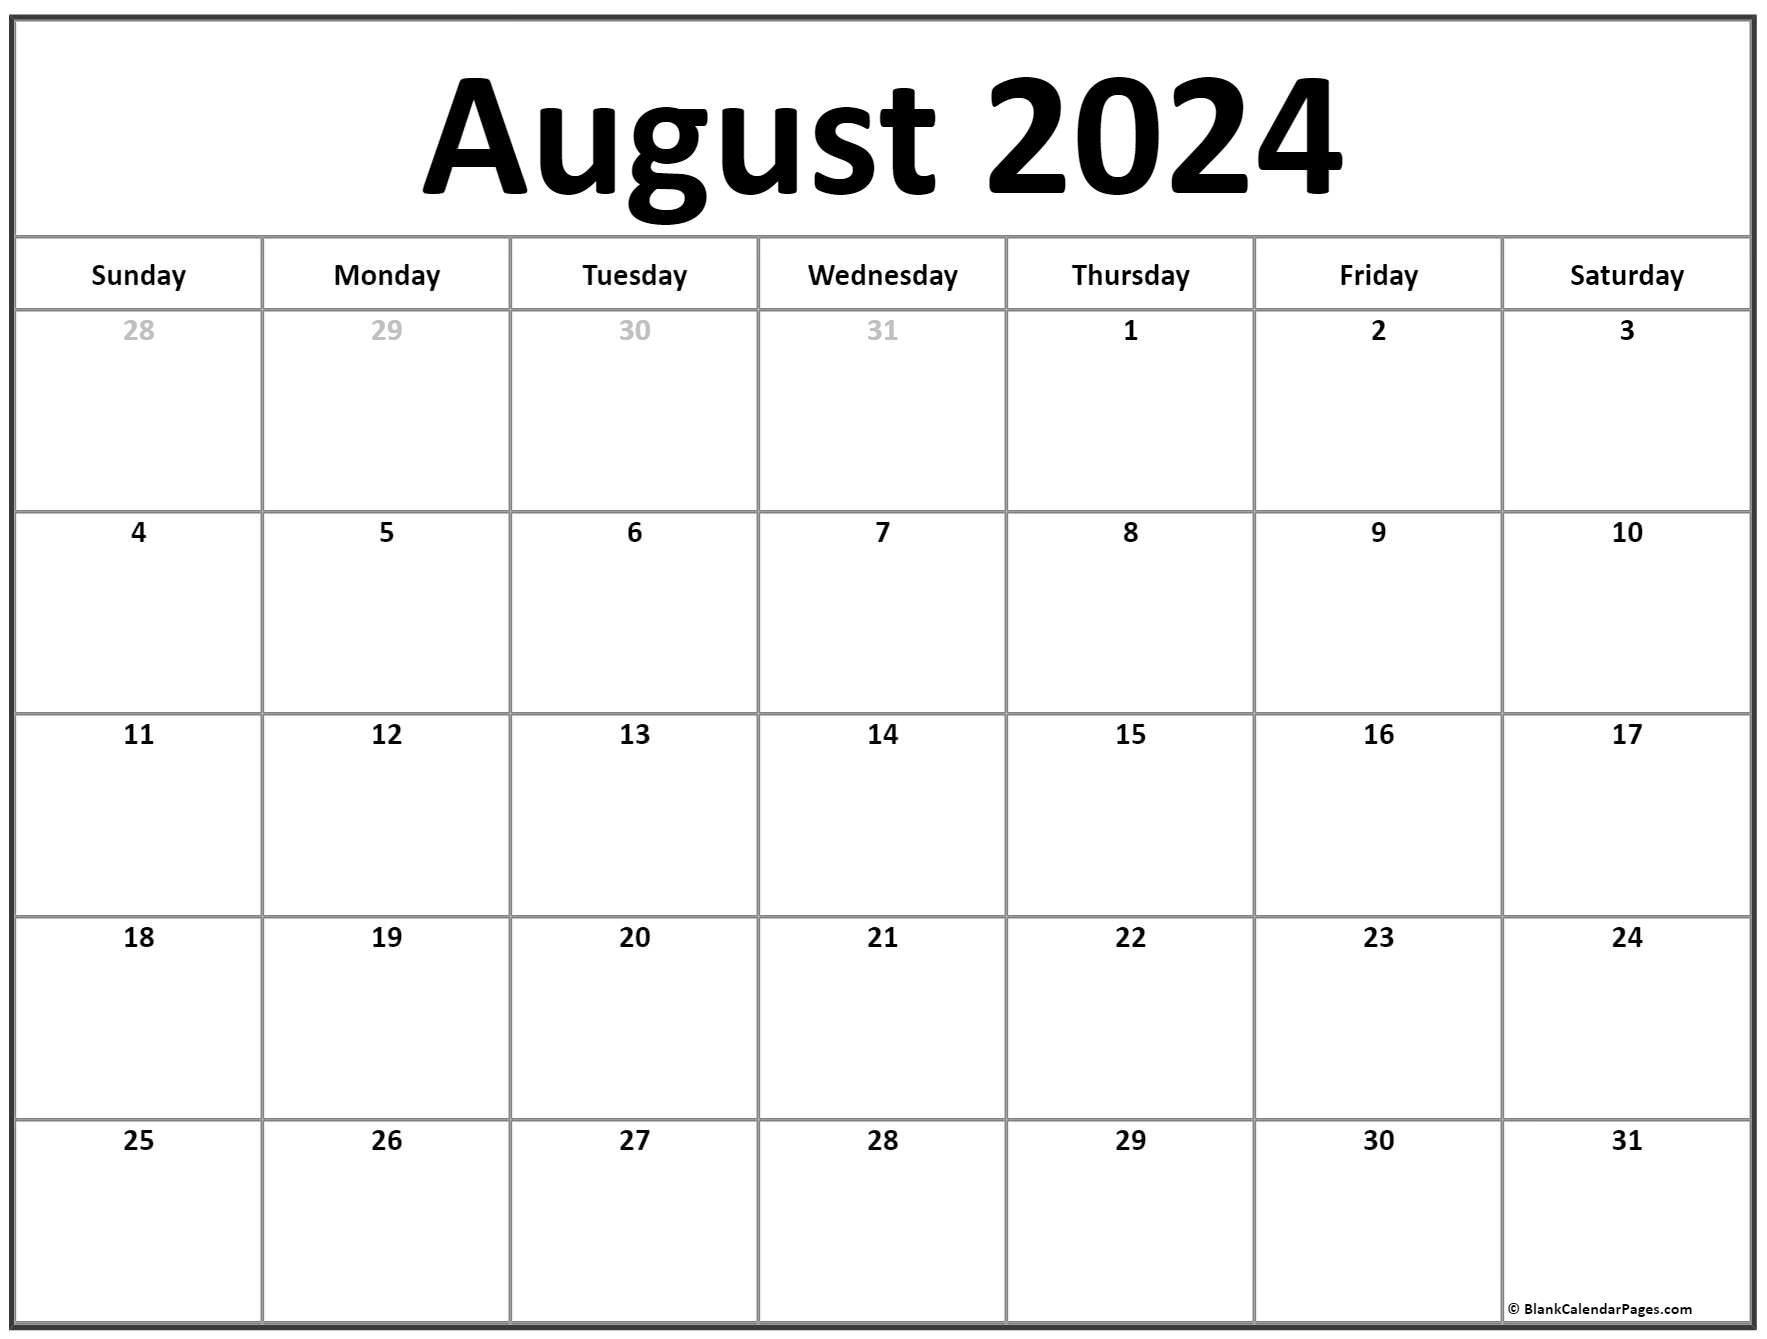 August 2024 Calendar Printable Free Rebe Valery